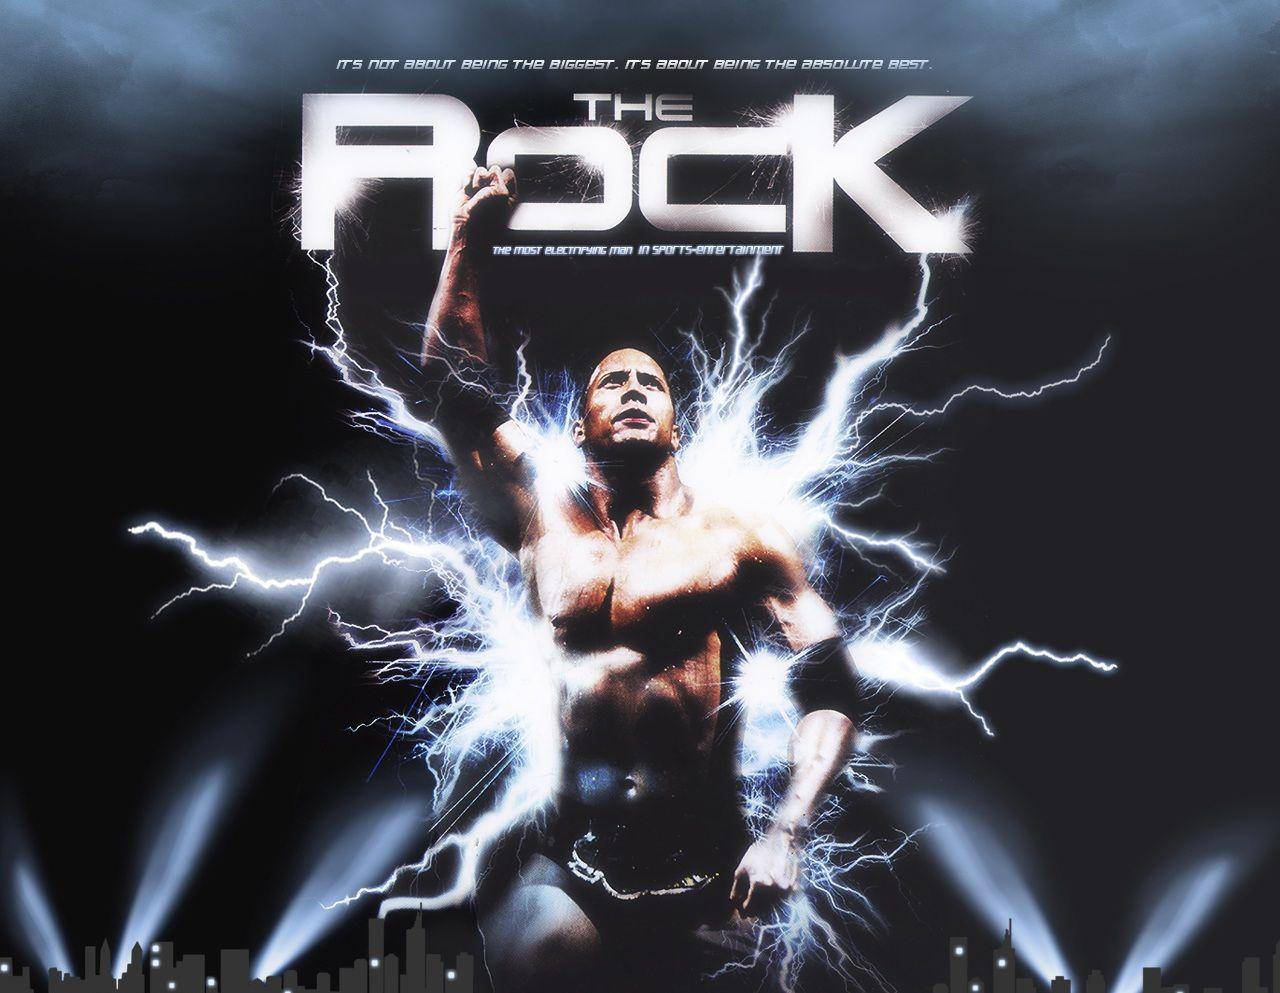 The Rock WWE WWE Superstars, WWE wallpaper, WWE picture